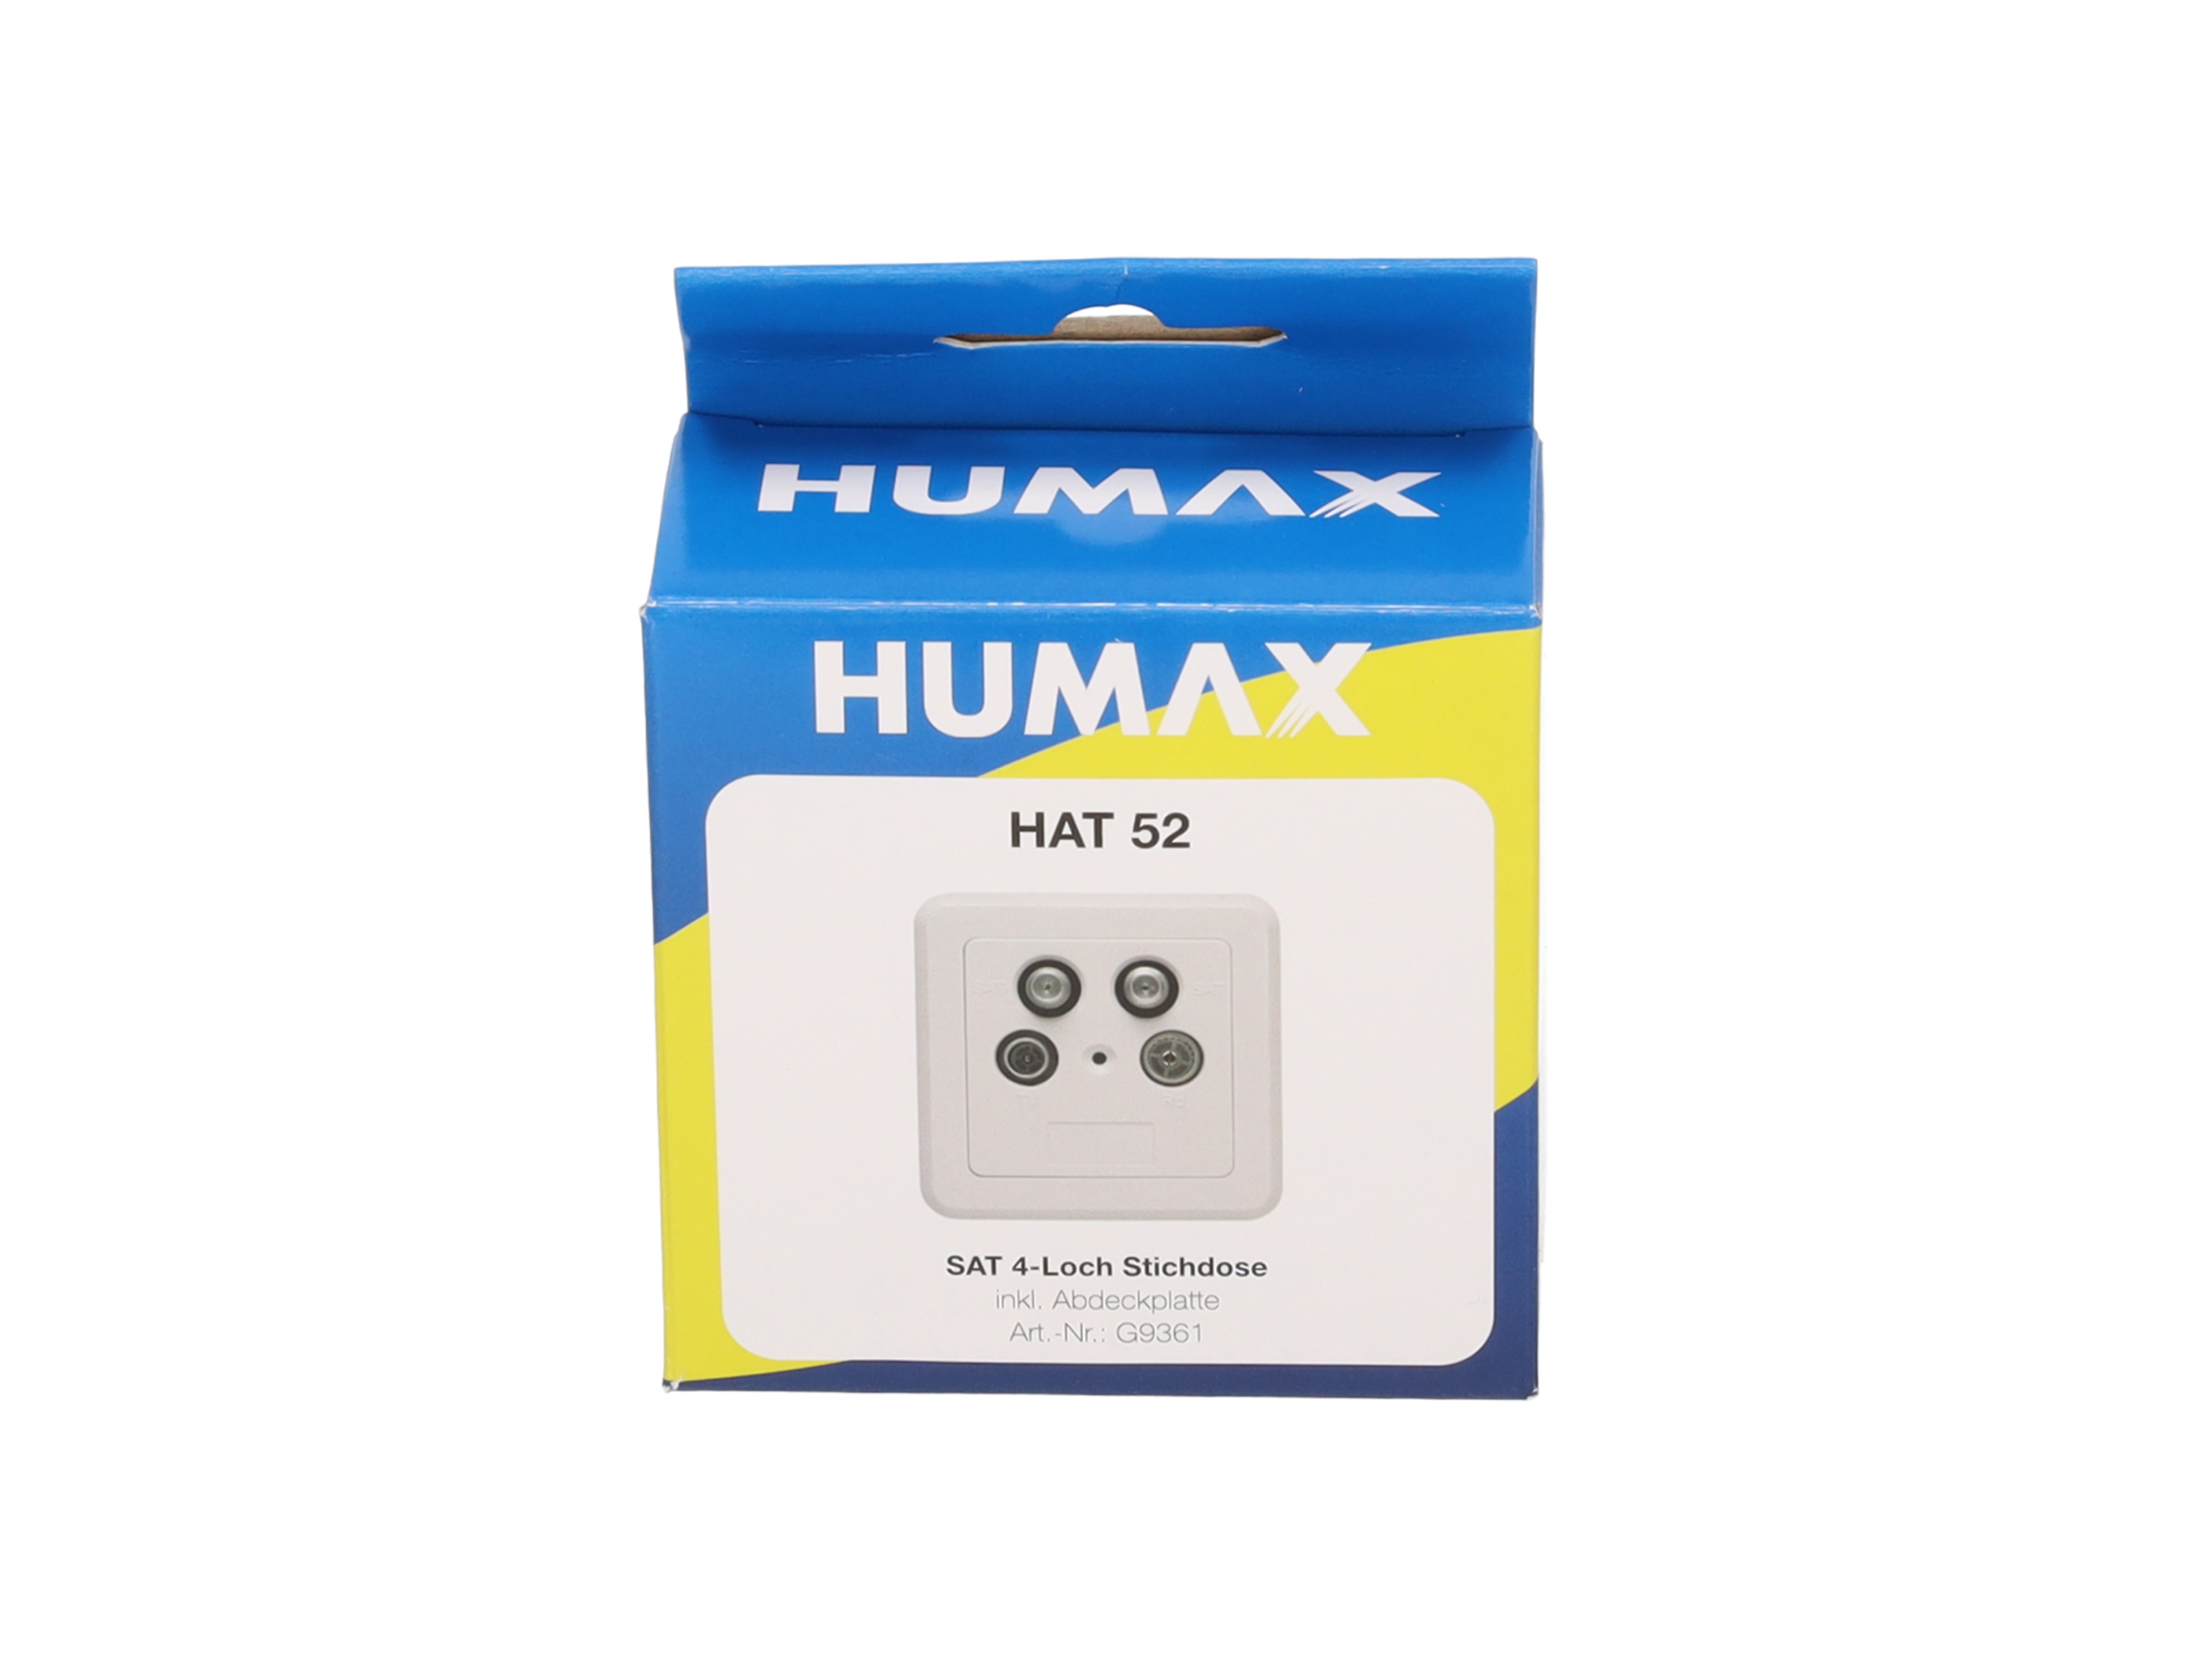 HUMAX HAT 52 4-Loch Antennenenddose Abdeckung mit